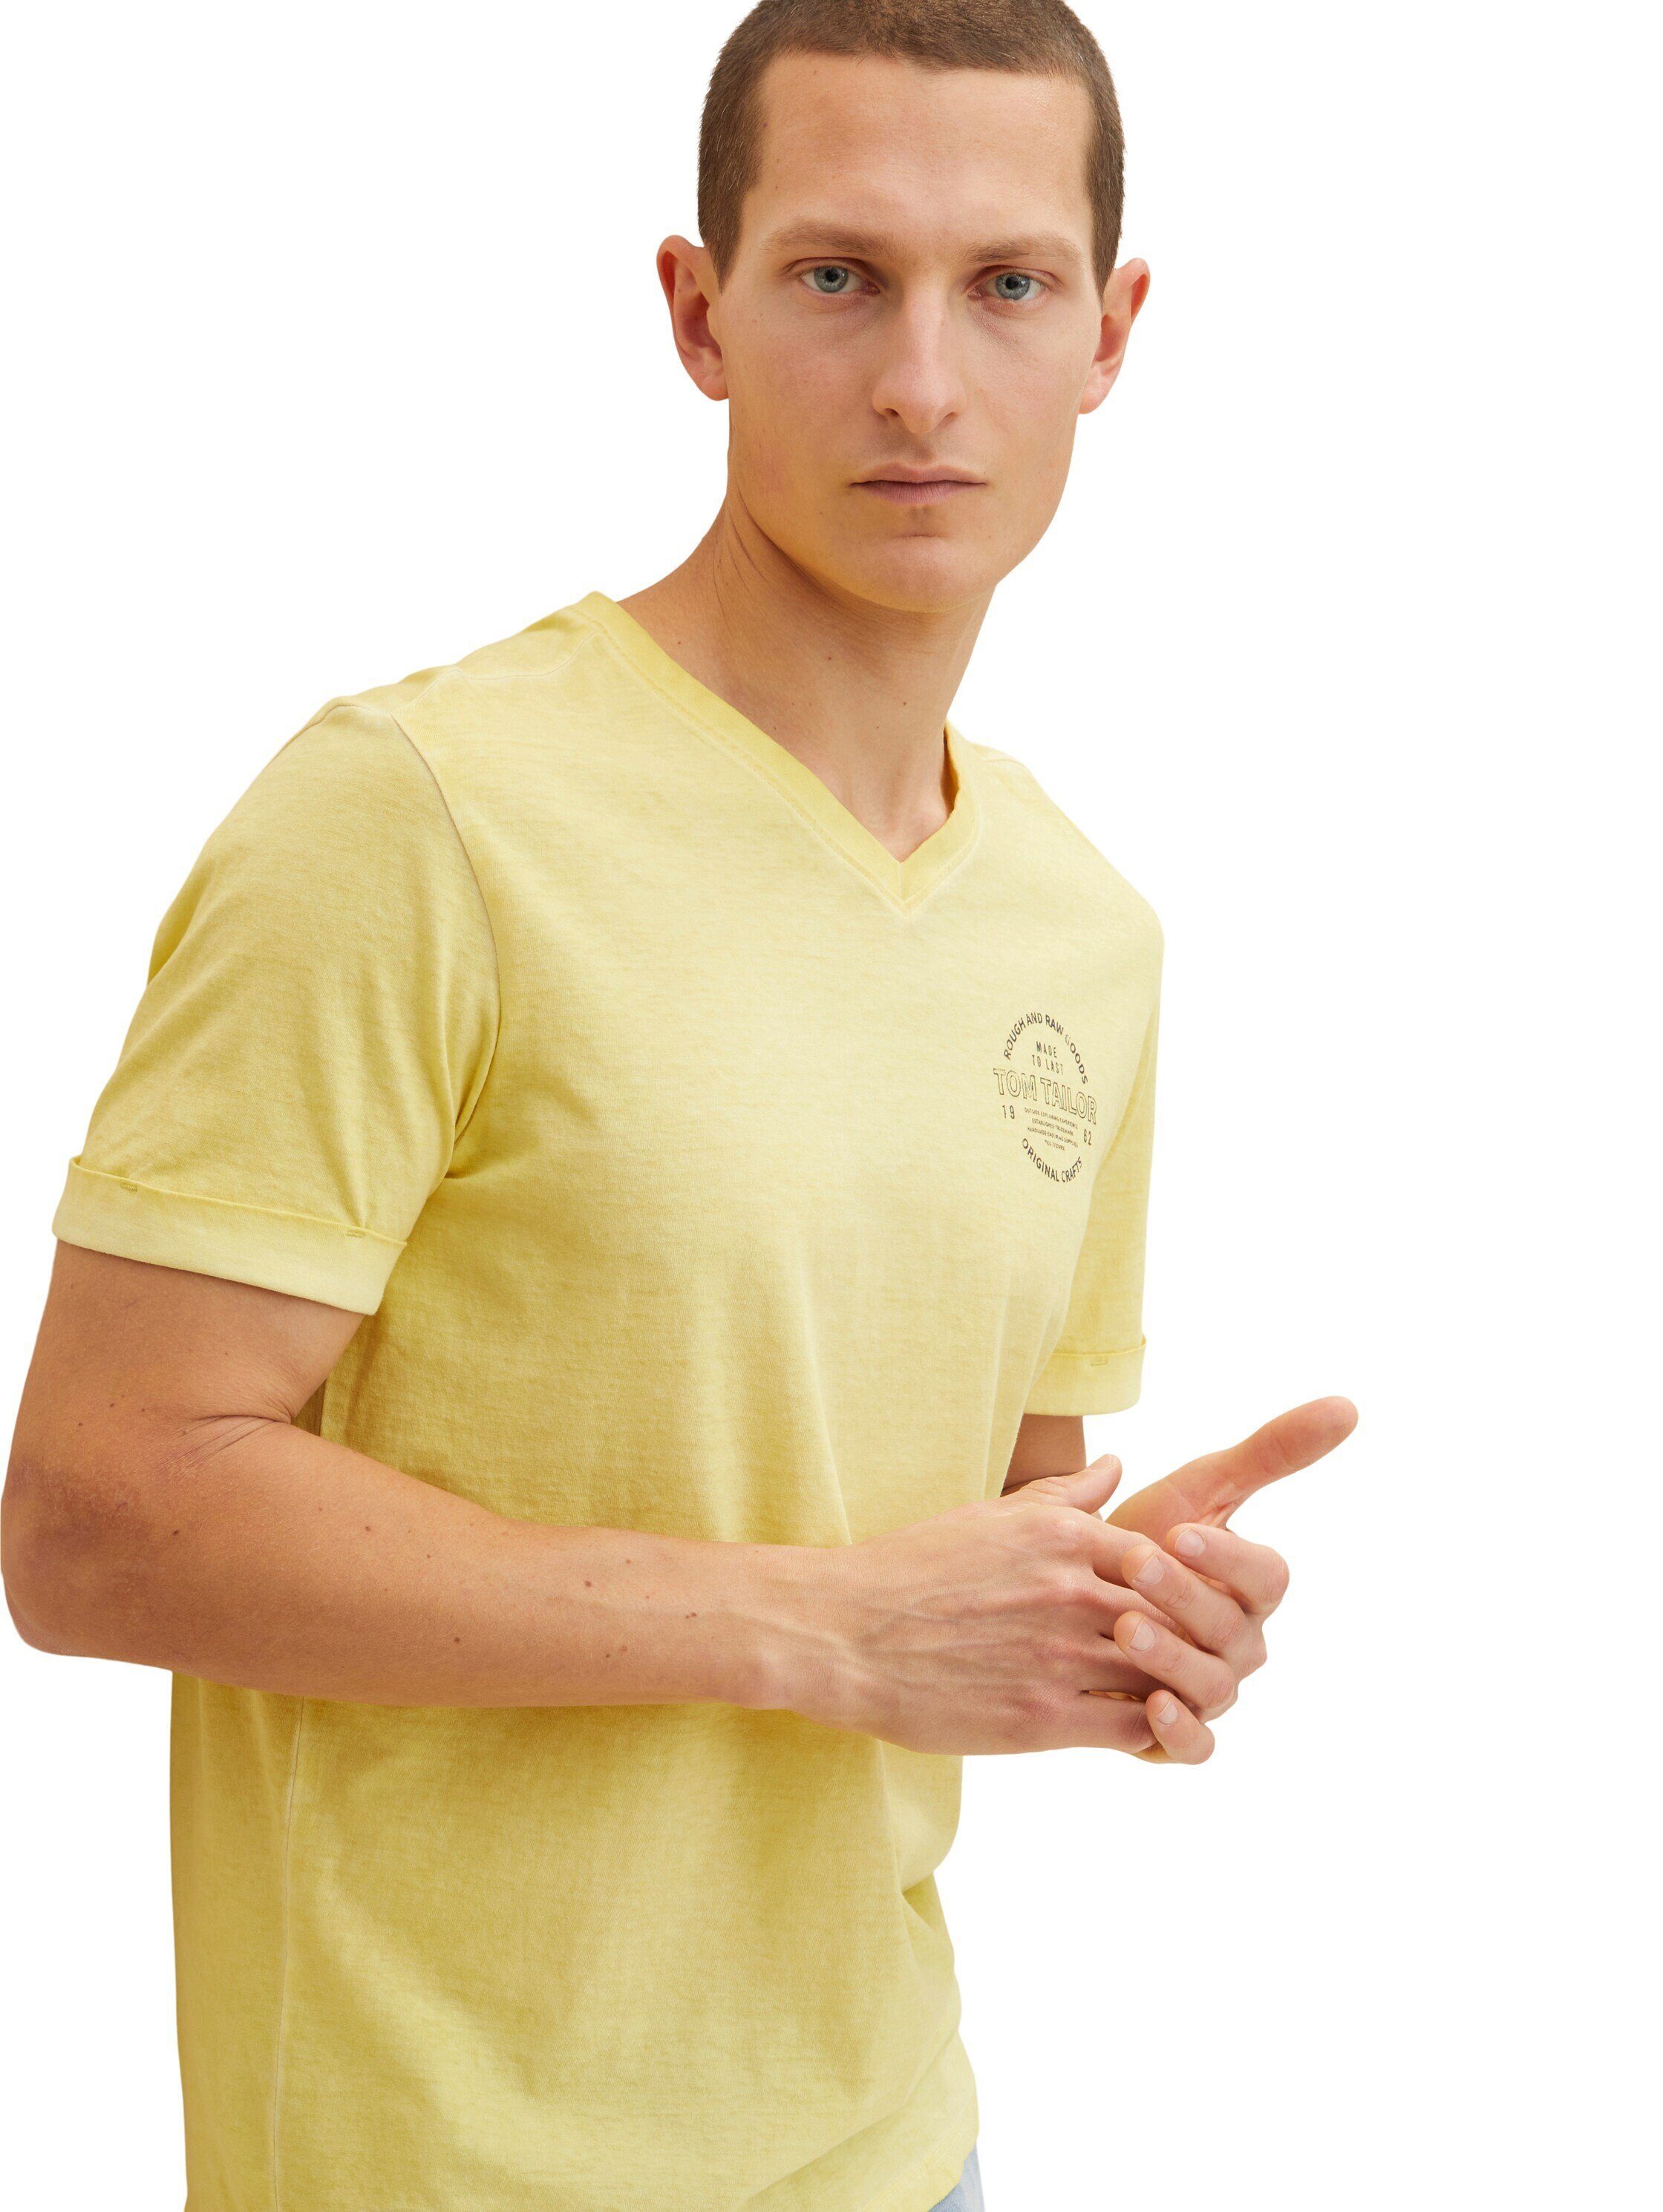 T-Shirt gelb T-Shirt und TAILOR mit TOM Shirt V-Ausschnitt Logo Print